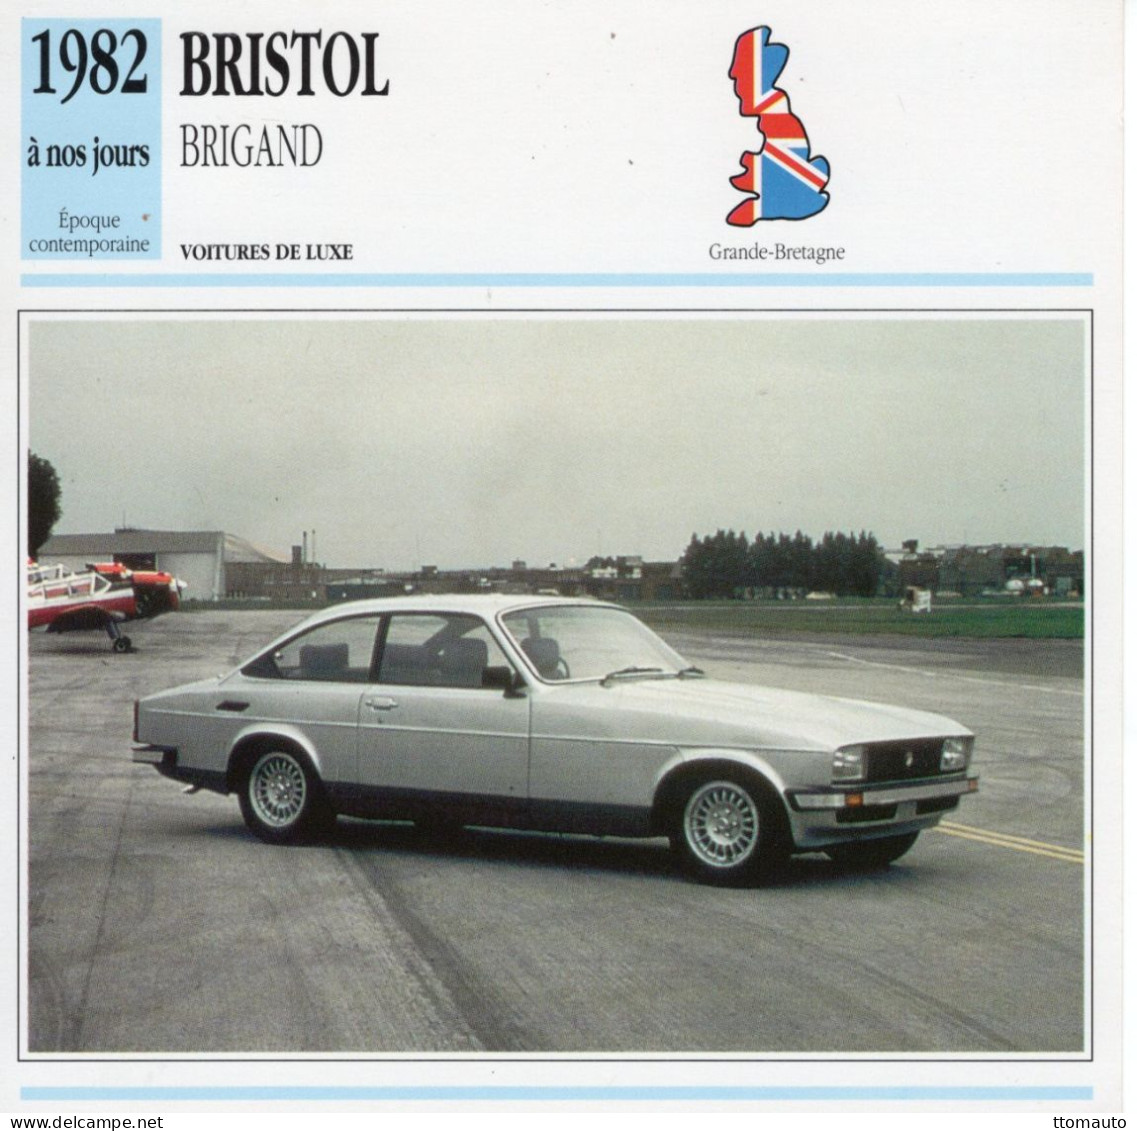 Bristol Brigand  -  1982  - Voiture De Luxe -  Fiche Technique Automobile (GB) - Voitures